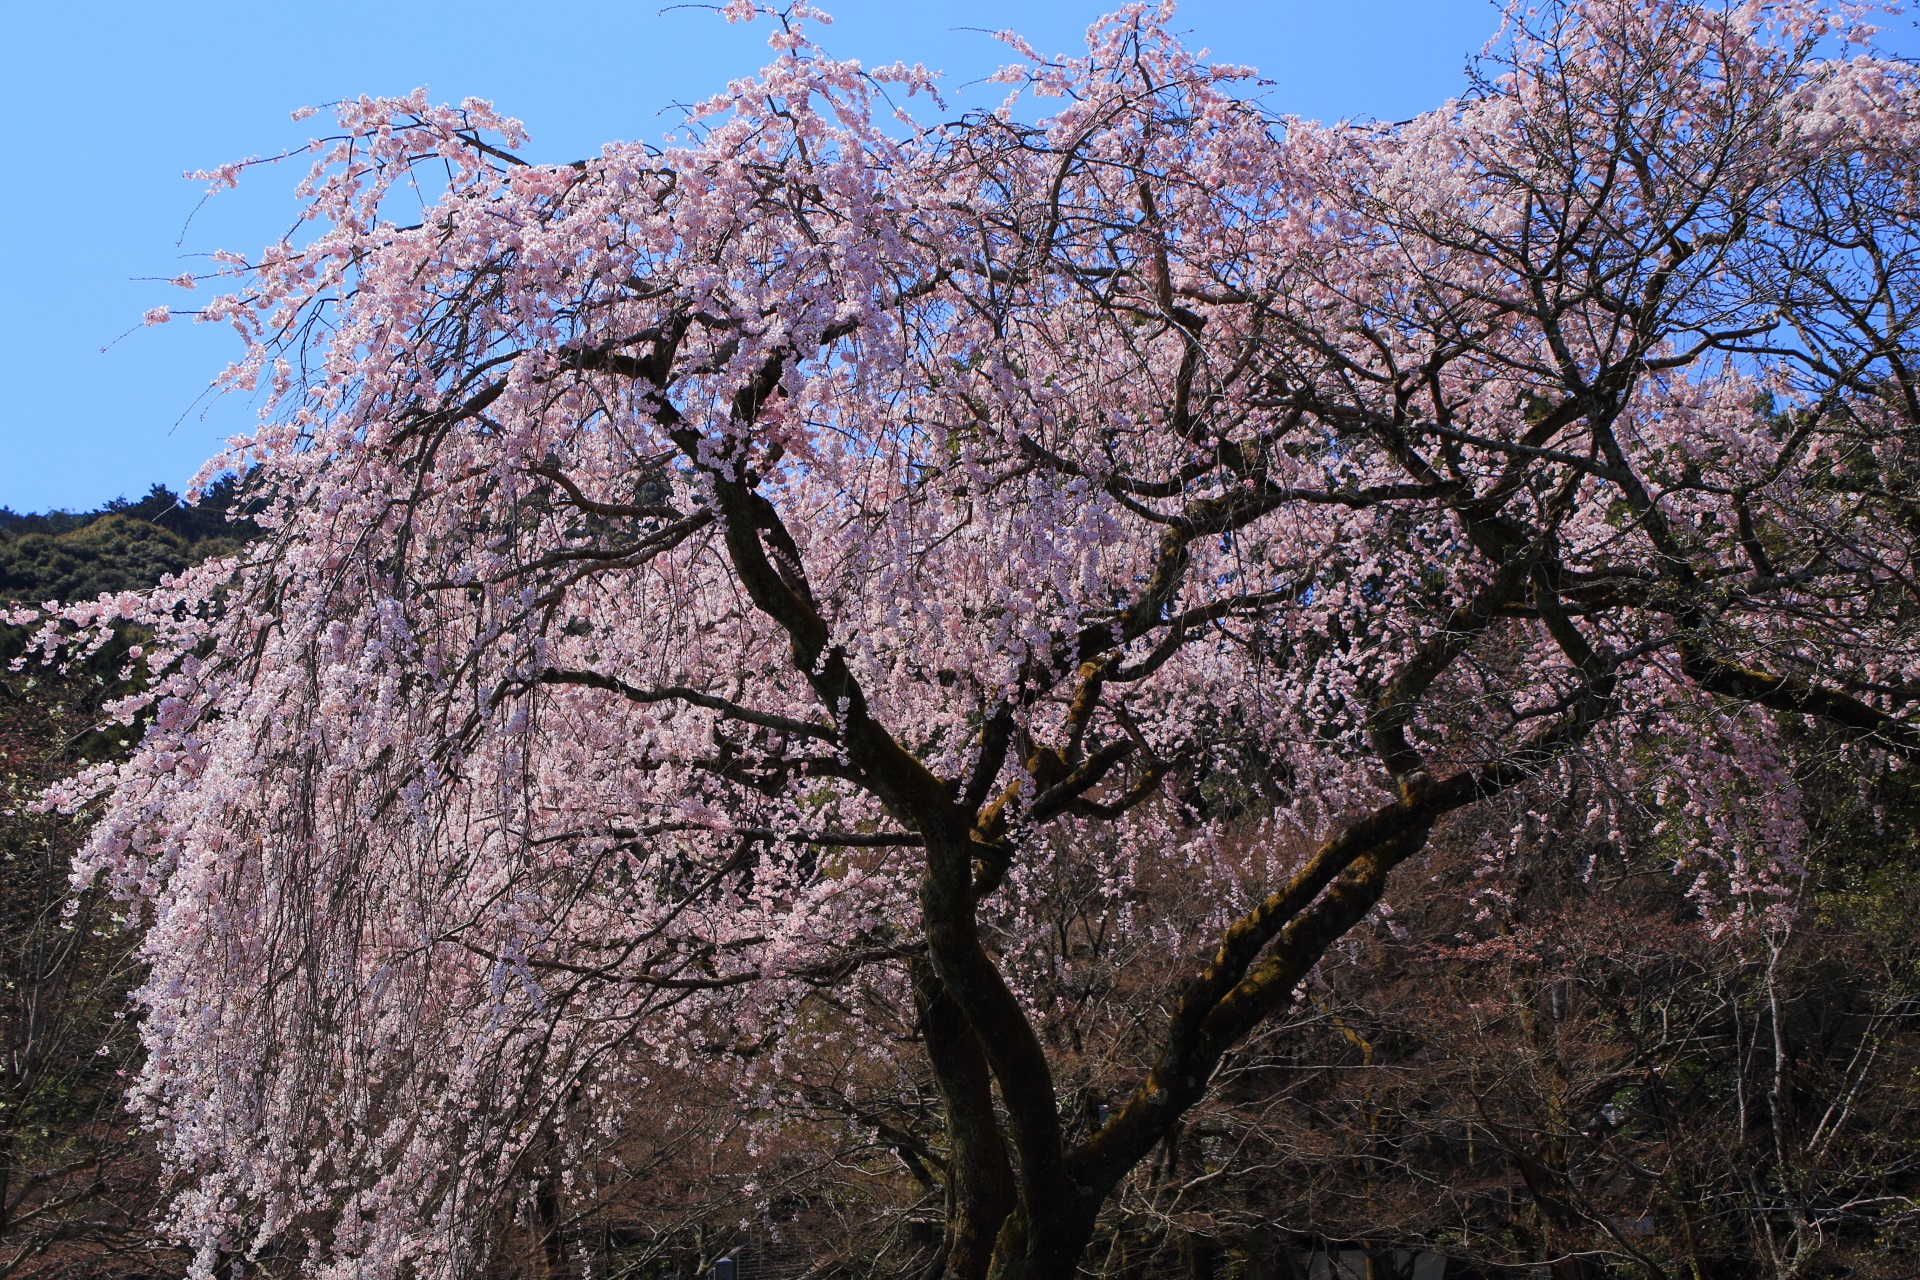 坂の下から見れば雰囲気の異なる円形の桜